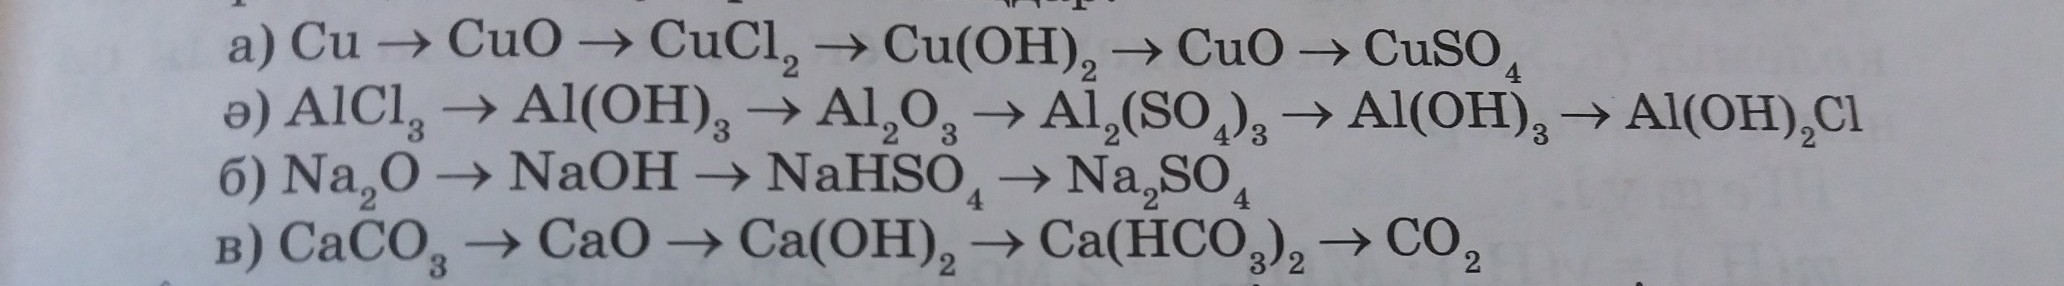 Al oh 3 x al2 so4 3. Al(Oh)3- al2o3 al CL 3. Alcl3 al Oh 3. Реакция al(Oh)3=al2o3. Al Oh 2 alcl3.